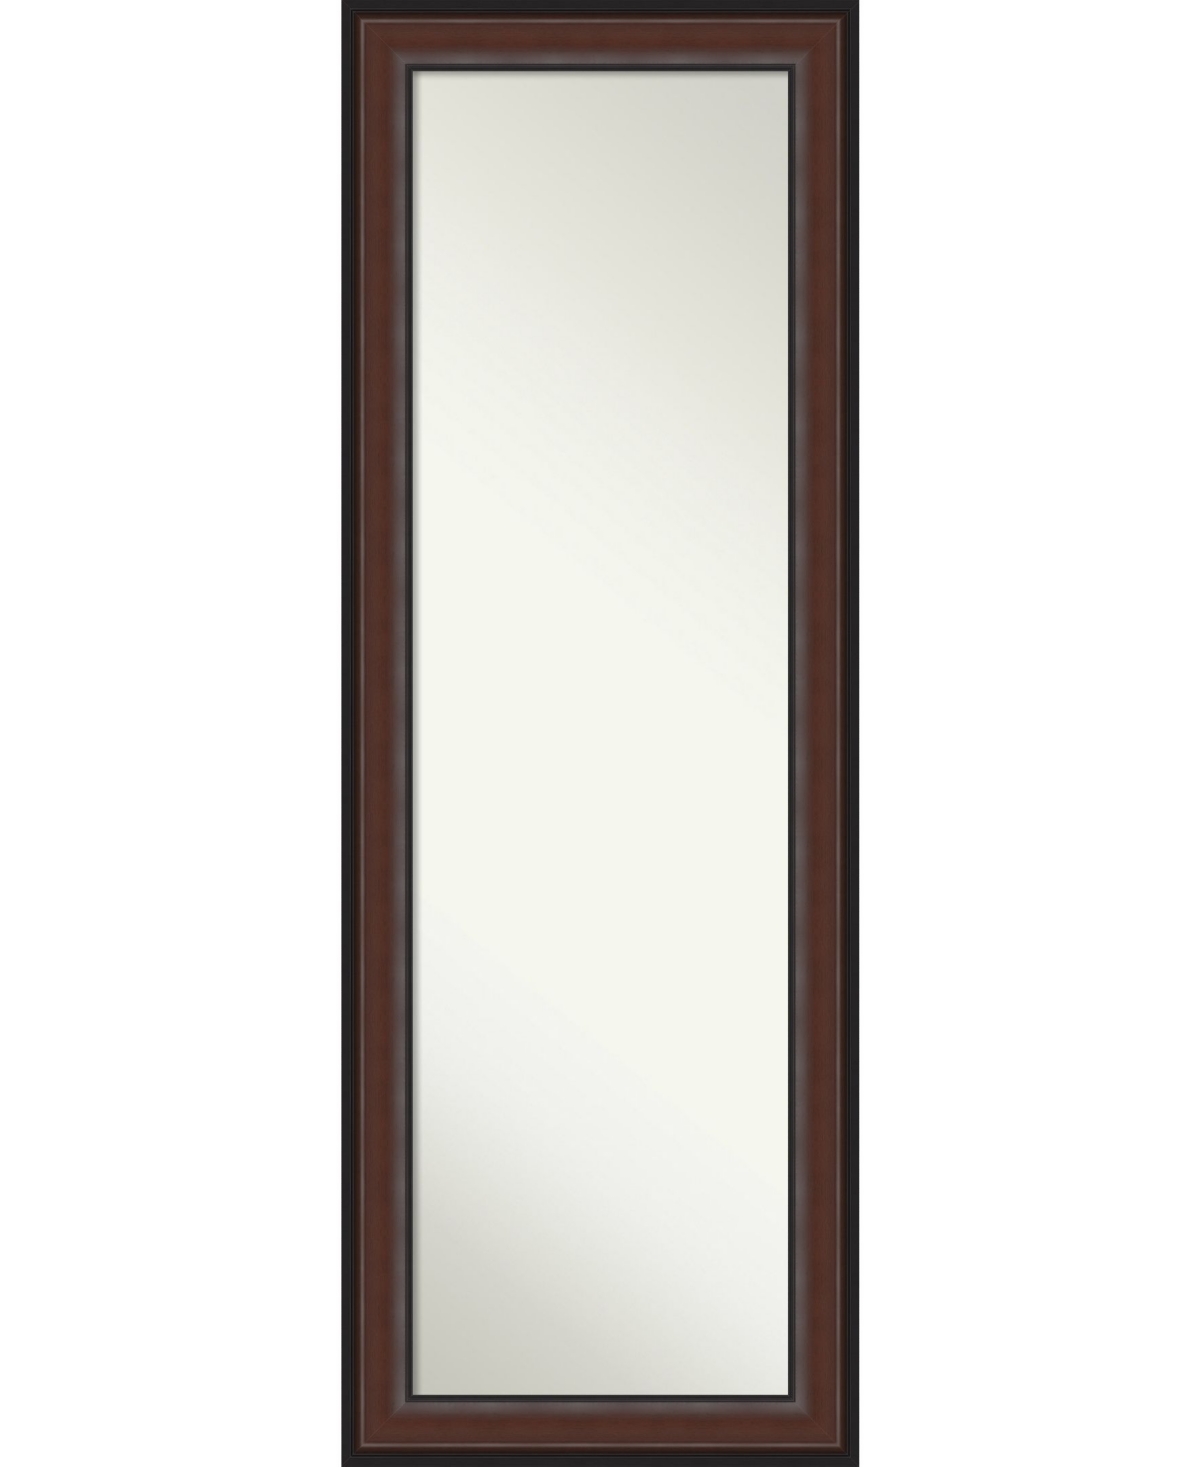 Harvard on The Door Full Length Mirror, 18.5" x 52.50" - Dark Brown